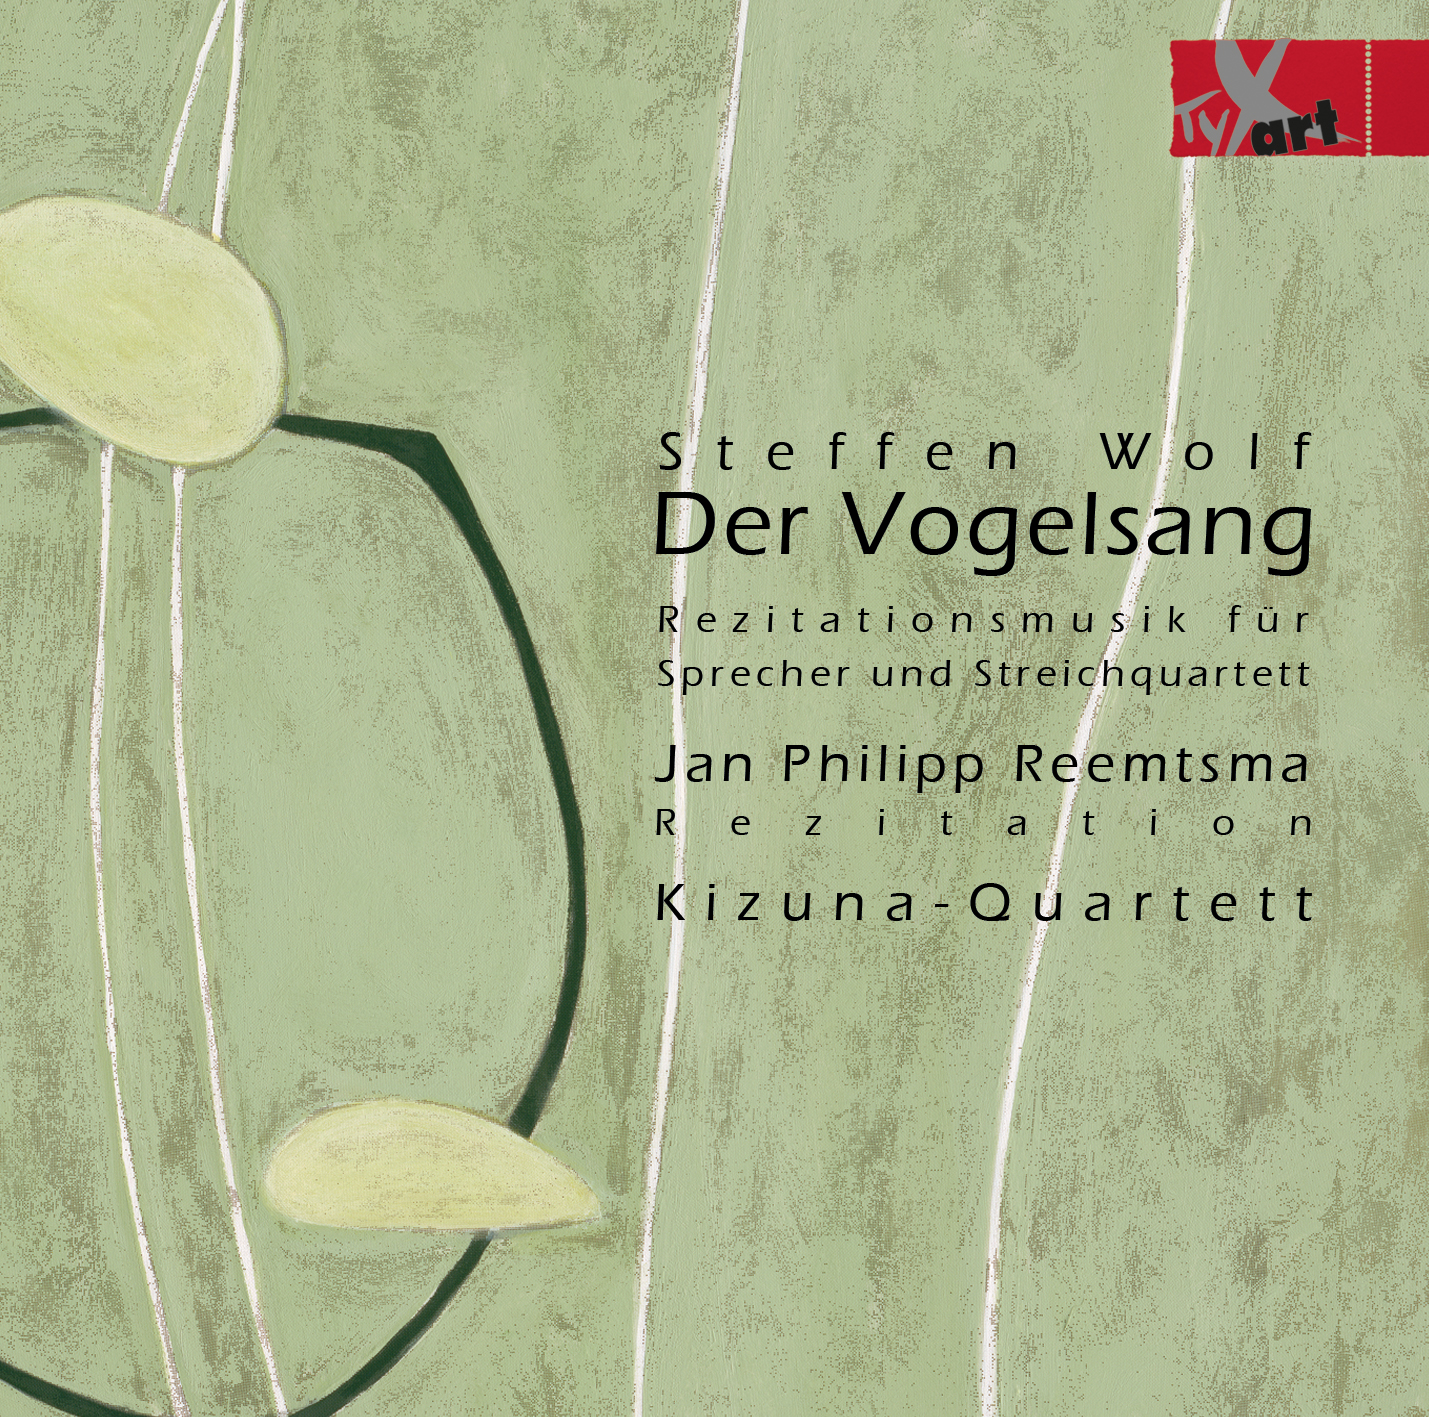 Steffen Wolf - Der Vogelsang - Jan Philipp Reemtsma - Kizuna-Quartett